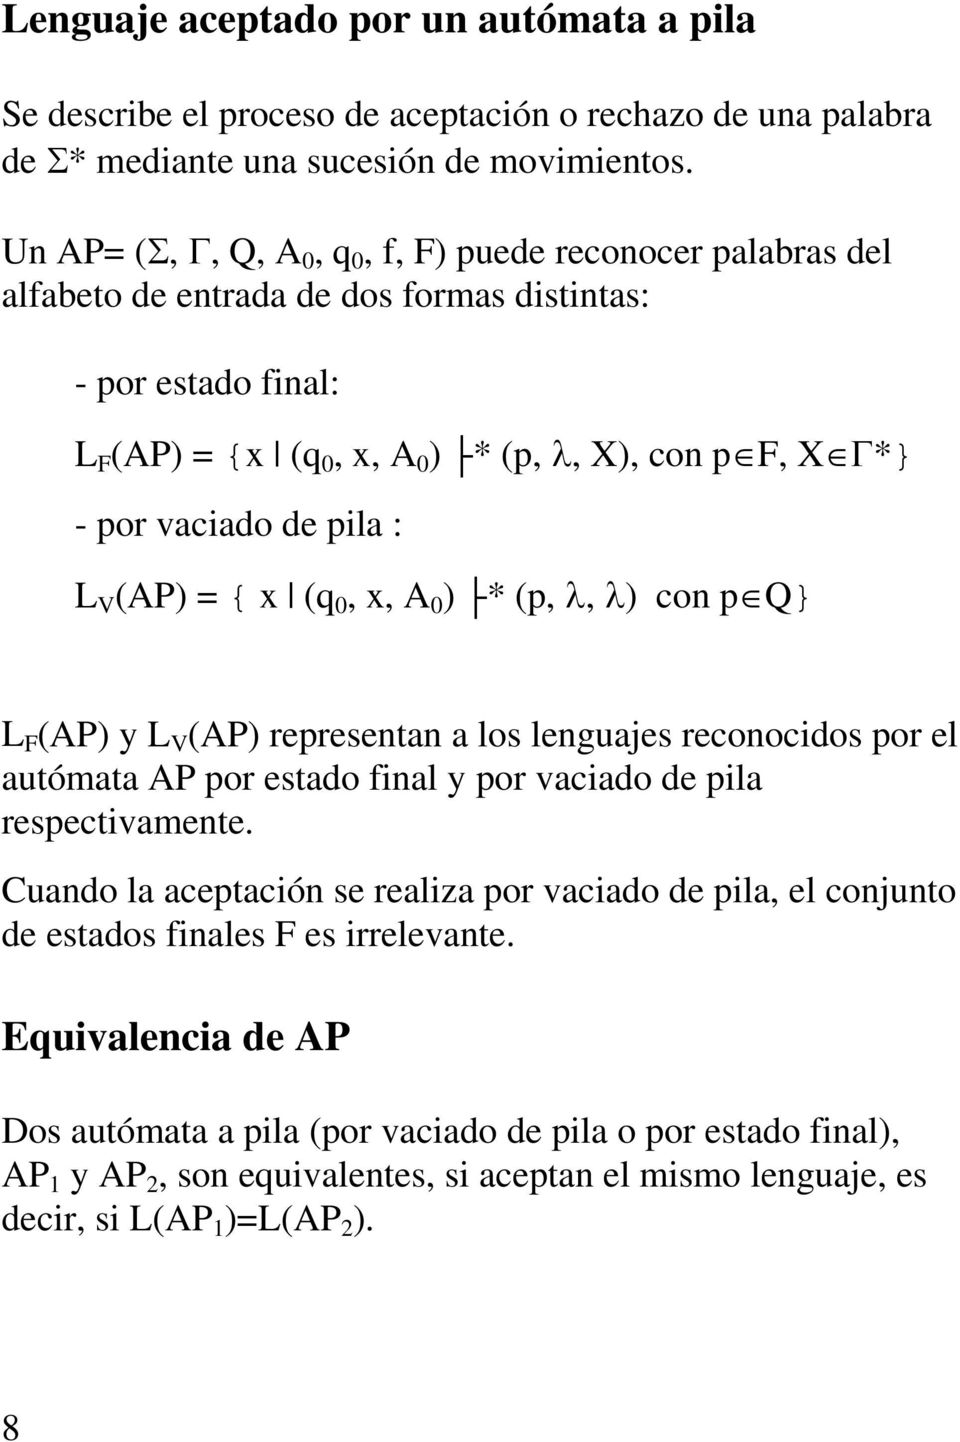 de pila : L V (AP) = { x (q 0, x, A 0 ) * (p, λ, λ) con p Q} L F (AP) y L V (AP) representan a los lenguajes reconocidos por el autómata AP por estado final y por vaciado de pila respectivamente.